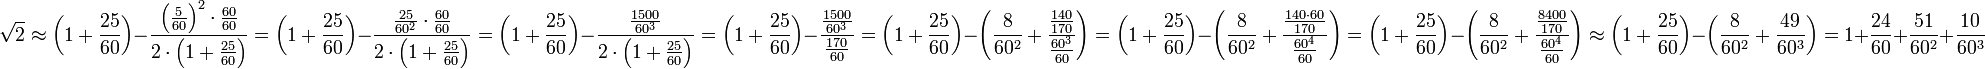 \sqrt{2}\approx\left(1+\frac{25}{60}\right)-\frac{\left(\frac{5}{60}\right)^2\sdot\frac{60}{60}}{2\sdot\left(1+\frac{25}{60}\right)}=\left(1+\frac{25}{60}\right)-\frac{\frac{25}{60^2}\sdot\frac{60}{60}}{2\sdot\left(1+\frac{25}{60}\right)}=\left(1+\frac{25}{60}\right)-\frac{\frac{1500}{60^3}}{2\sdot\left(1+\frac{25}{60}\right)}=\left(1+\frac{25}{60}\right)-\frac{\frac{1500}{60^3}}{\frac{170}{60}}=\left(1+\frac{25}{60}\right)-\left(\frac{8}{60^2}+\frac{\frac{140}{170}}{\frac{60^3}{60}}\right)=\left(1+\frac{25}{60}\right)-\left(\frac{8}{60^2}+\frac{\frac{140\sdot60}{170}}{\frac{60^4}{60}}\right)=\left(1+\frac{25}{60}\right)-\left(\frac{8}{60^2}+\frac{\frac{8400}{170}}{\frac{60^4}{60}}\right)\approx\left(1+\frac{25}{60}\right)-\left(\frac{8}{60^2}+\frac{49}{60^3}\right)=1+\frac{24}{60}+\frac{51}{60^2}+\frac{10}{60^3}